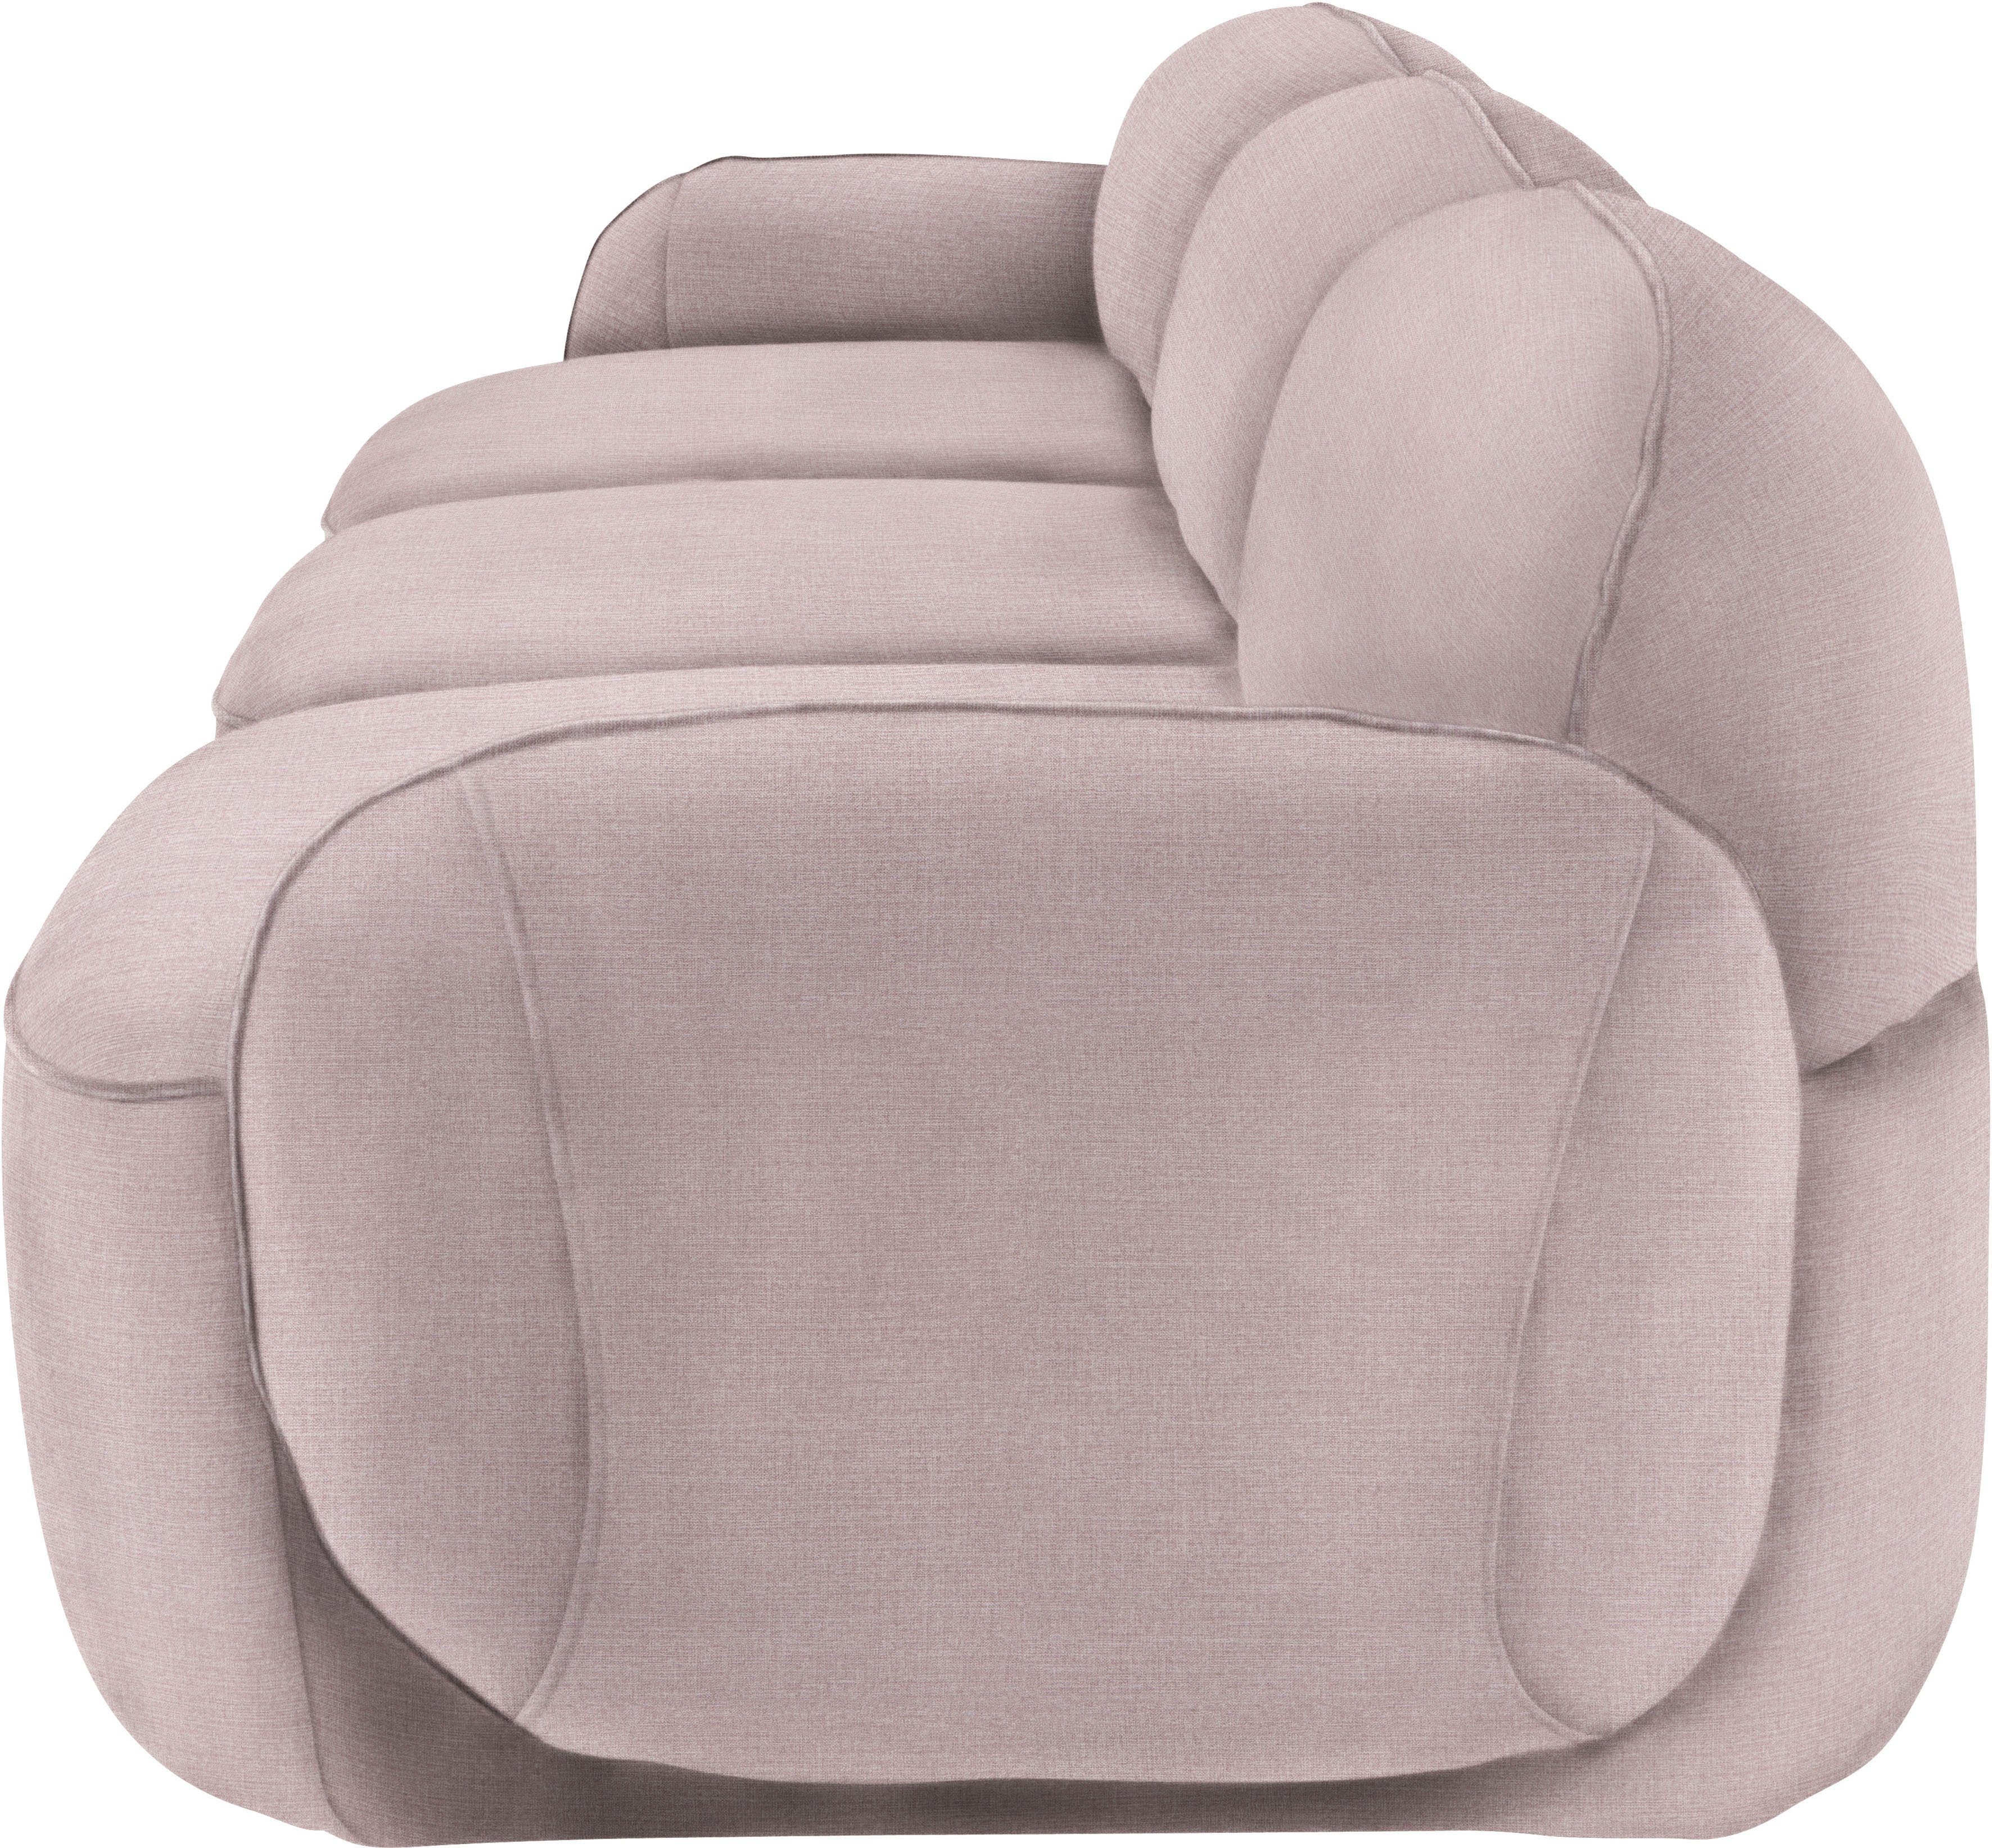 komfortabel durch im furninova Memoryschaum, Bubble, skandinavischen 3,5-Sitzer Design